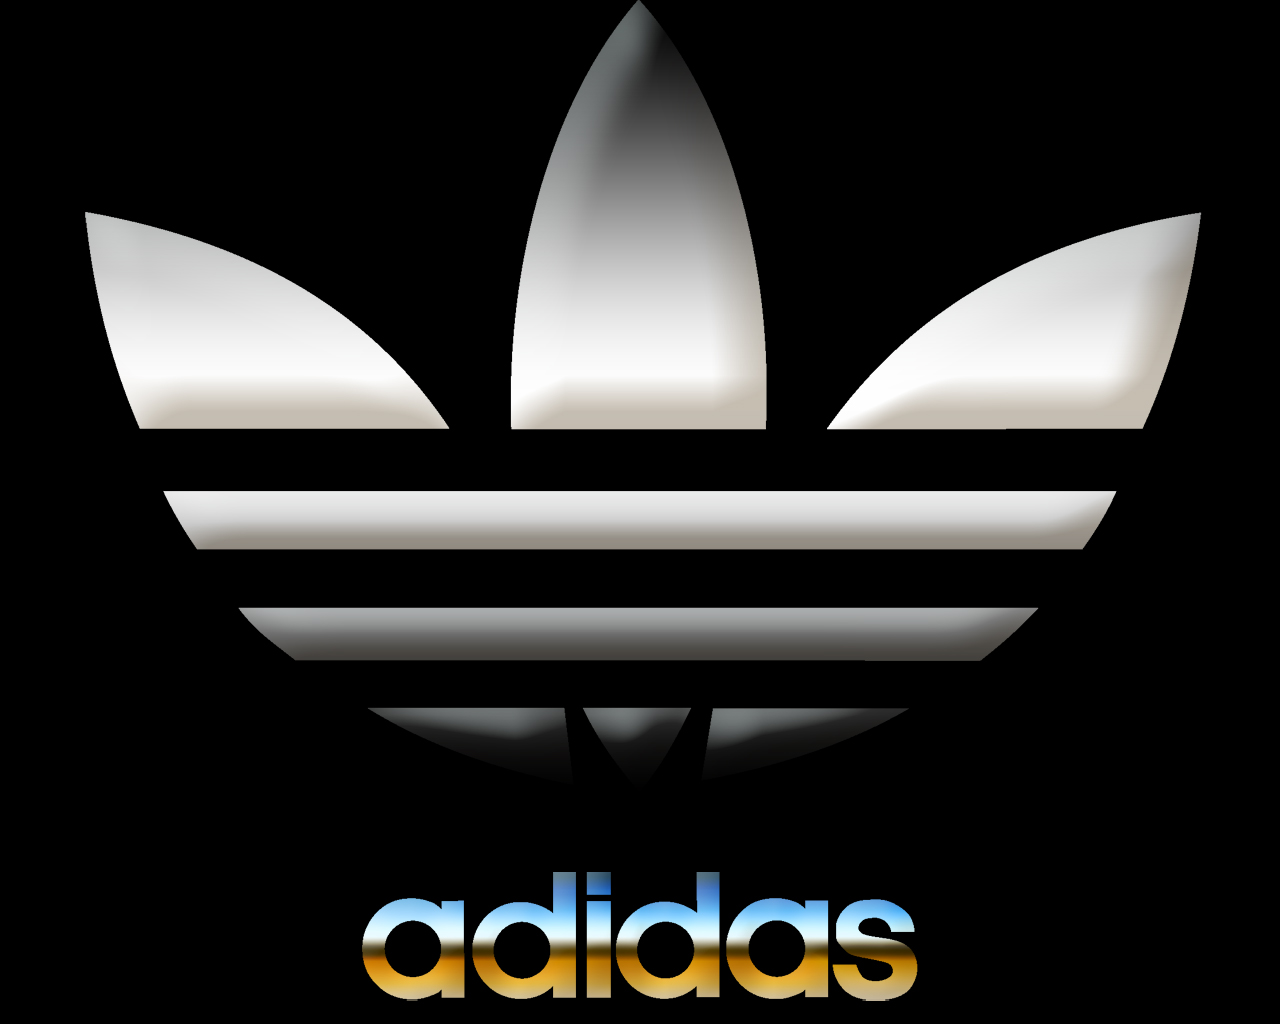 Adidas Logos Wallpaper Description HD